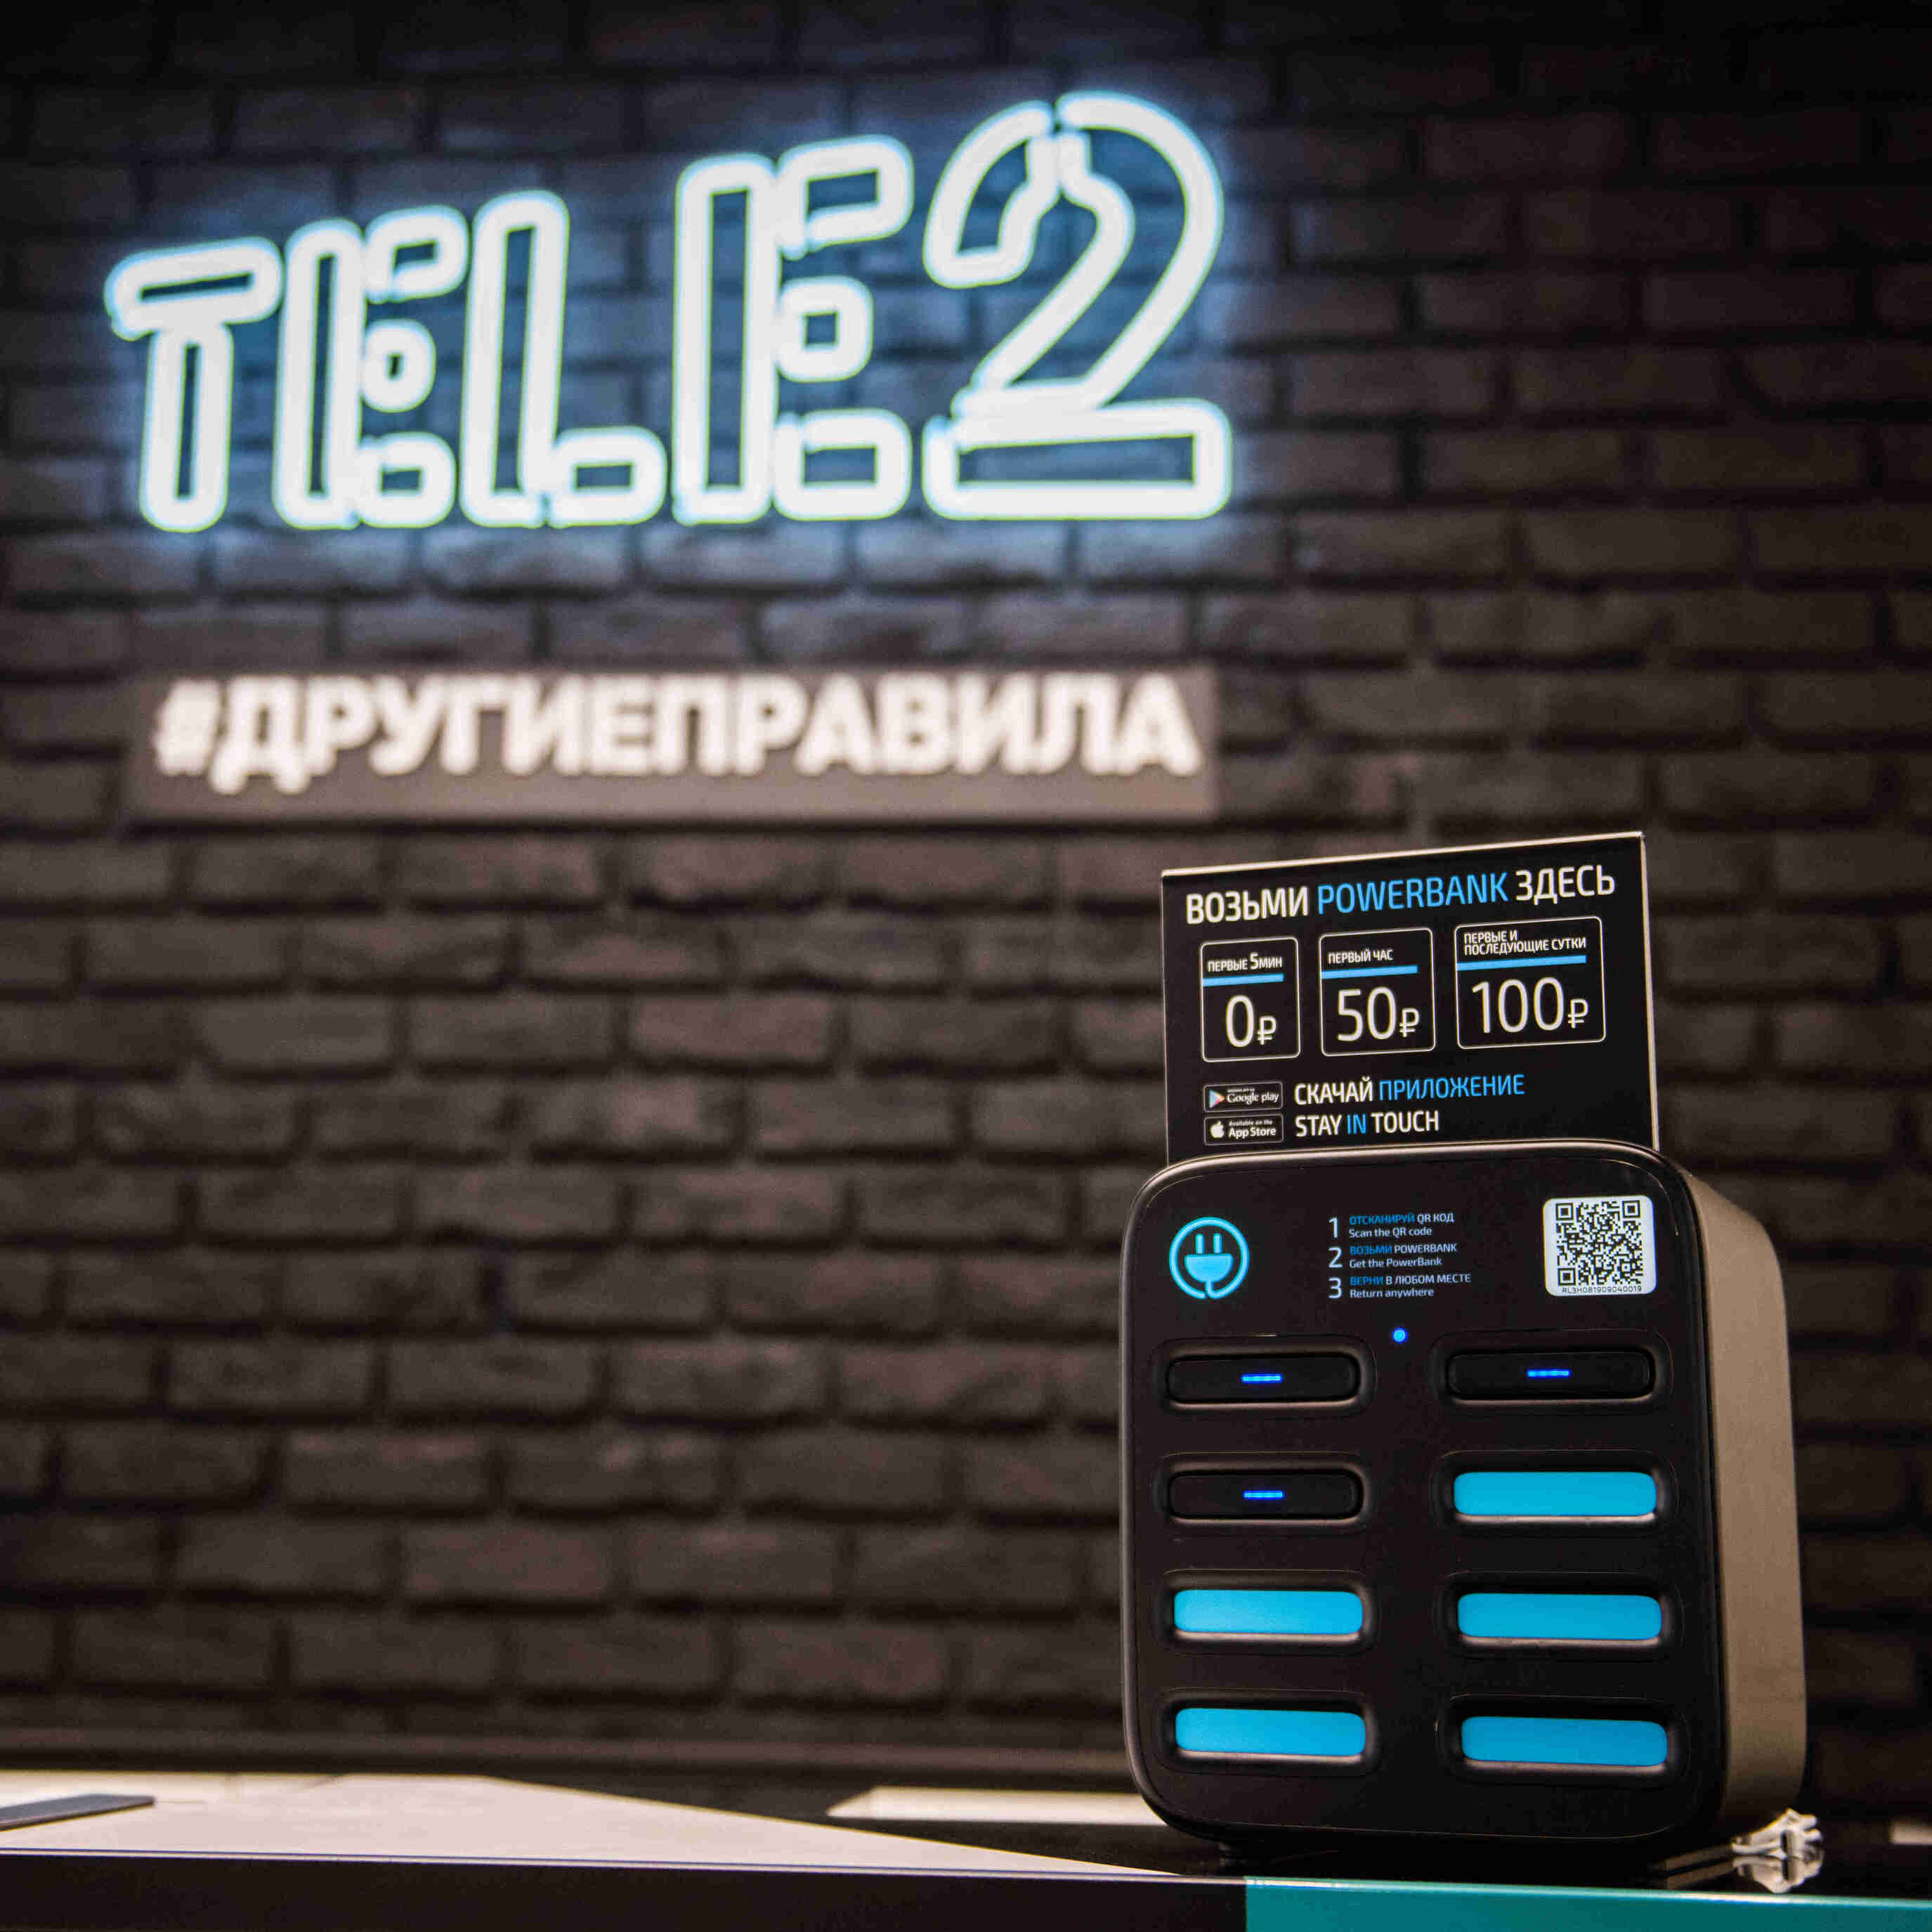   tele2       